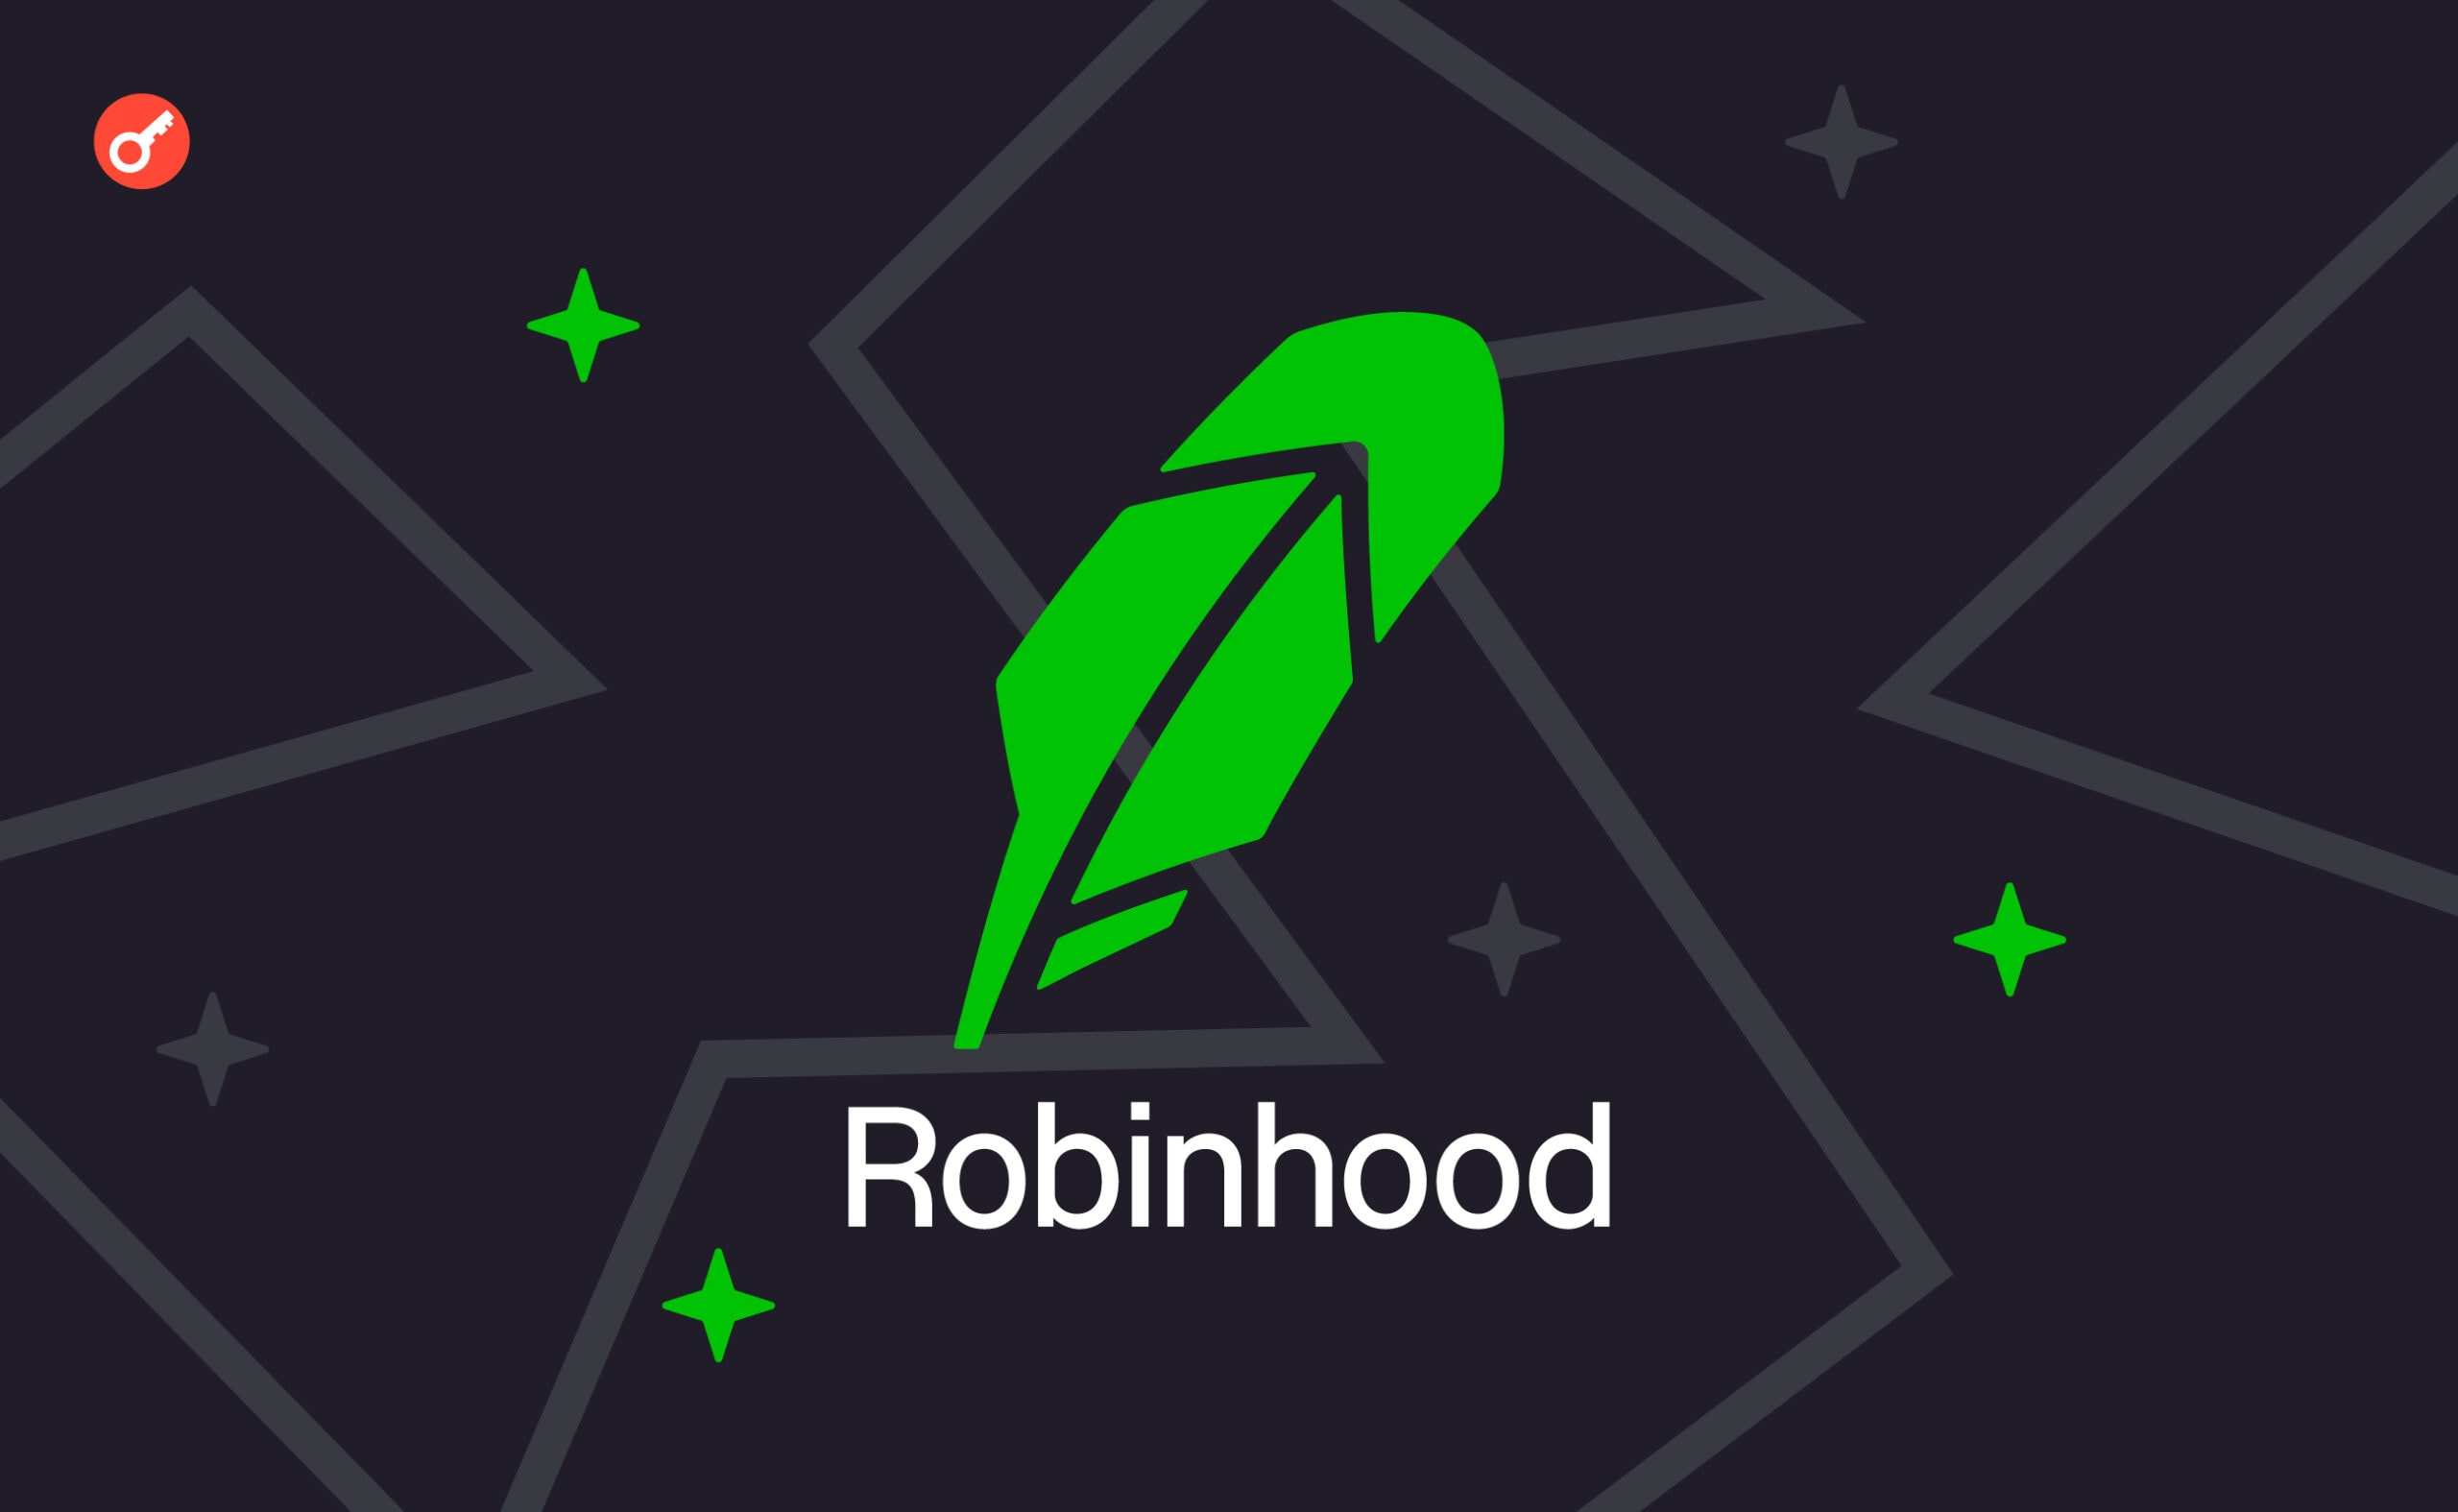 Robinhood додала опцію Connect для спрощення криптопокупок. Головний колаж новини.